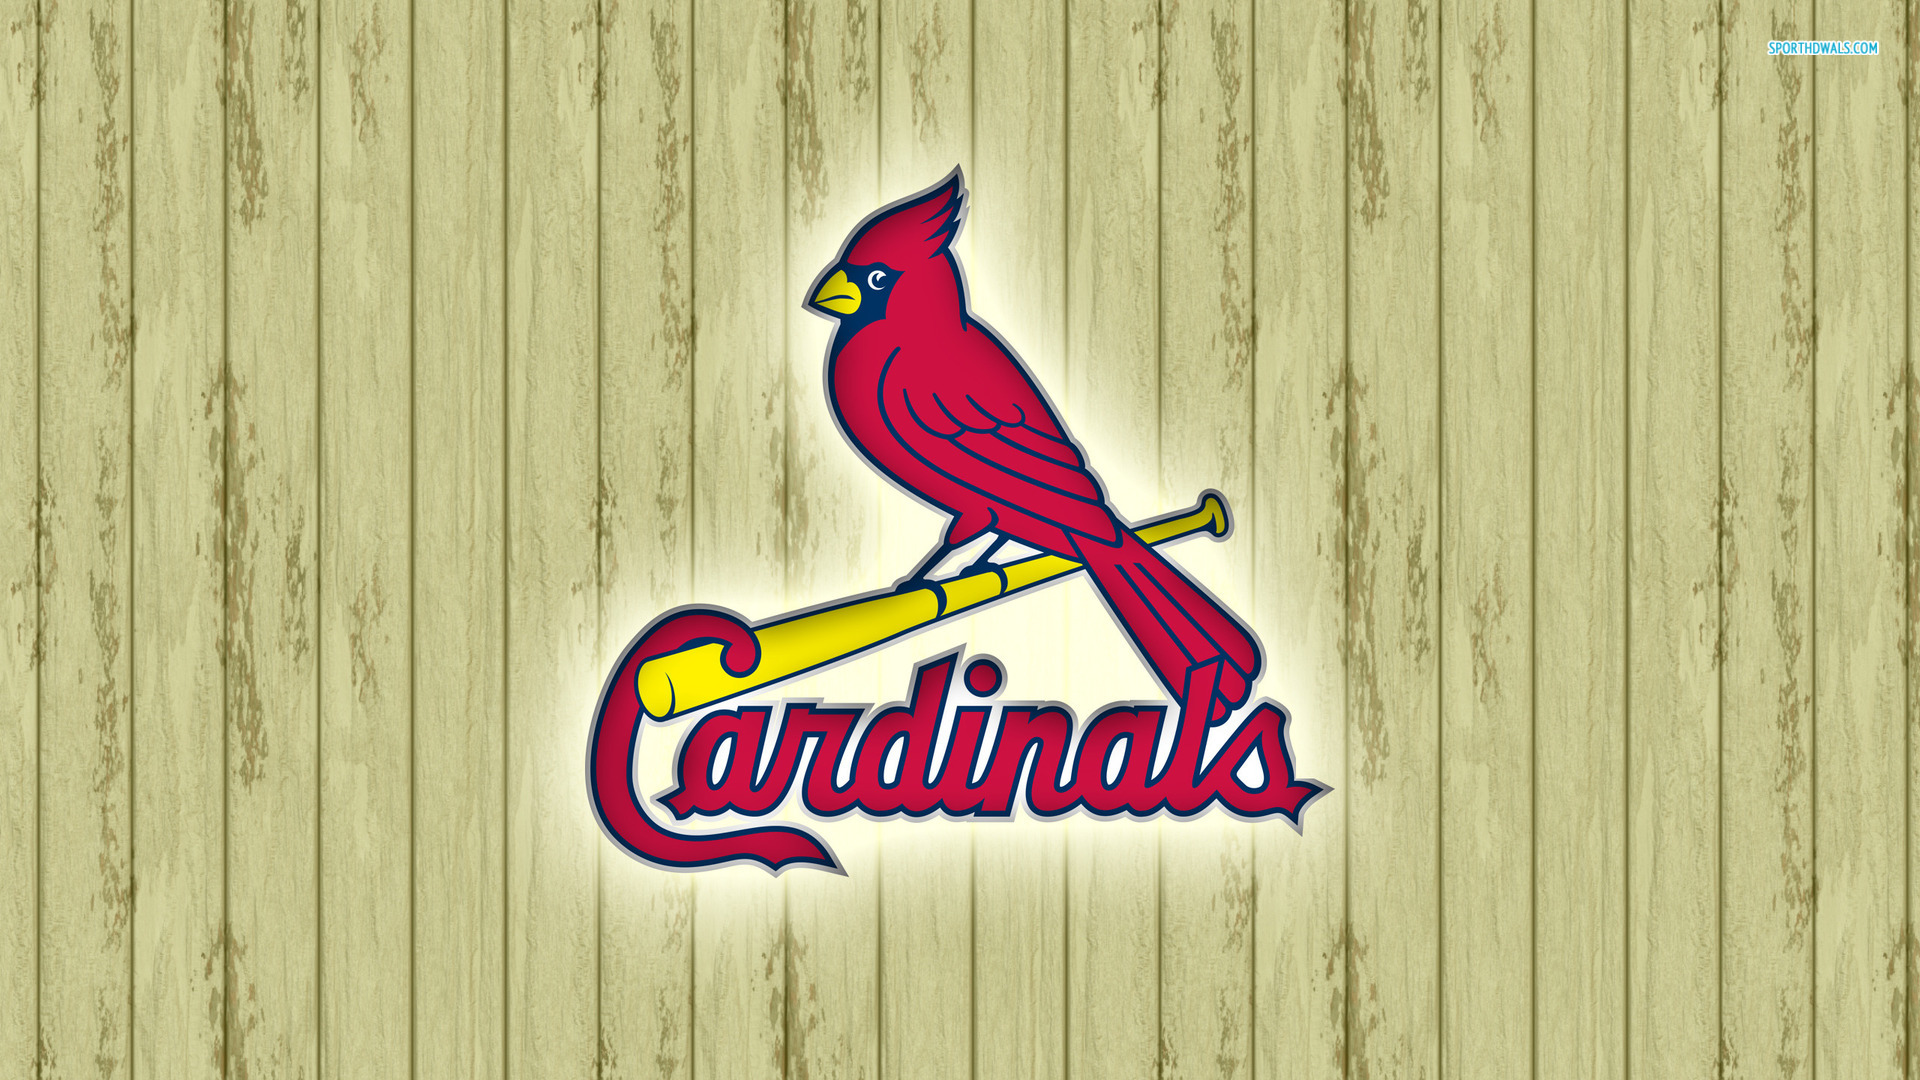 St Louis Cardinals wallpaper 1920x1080